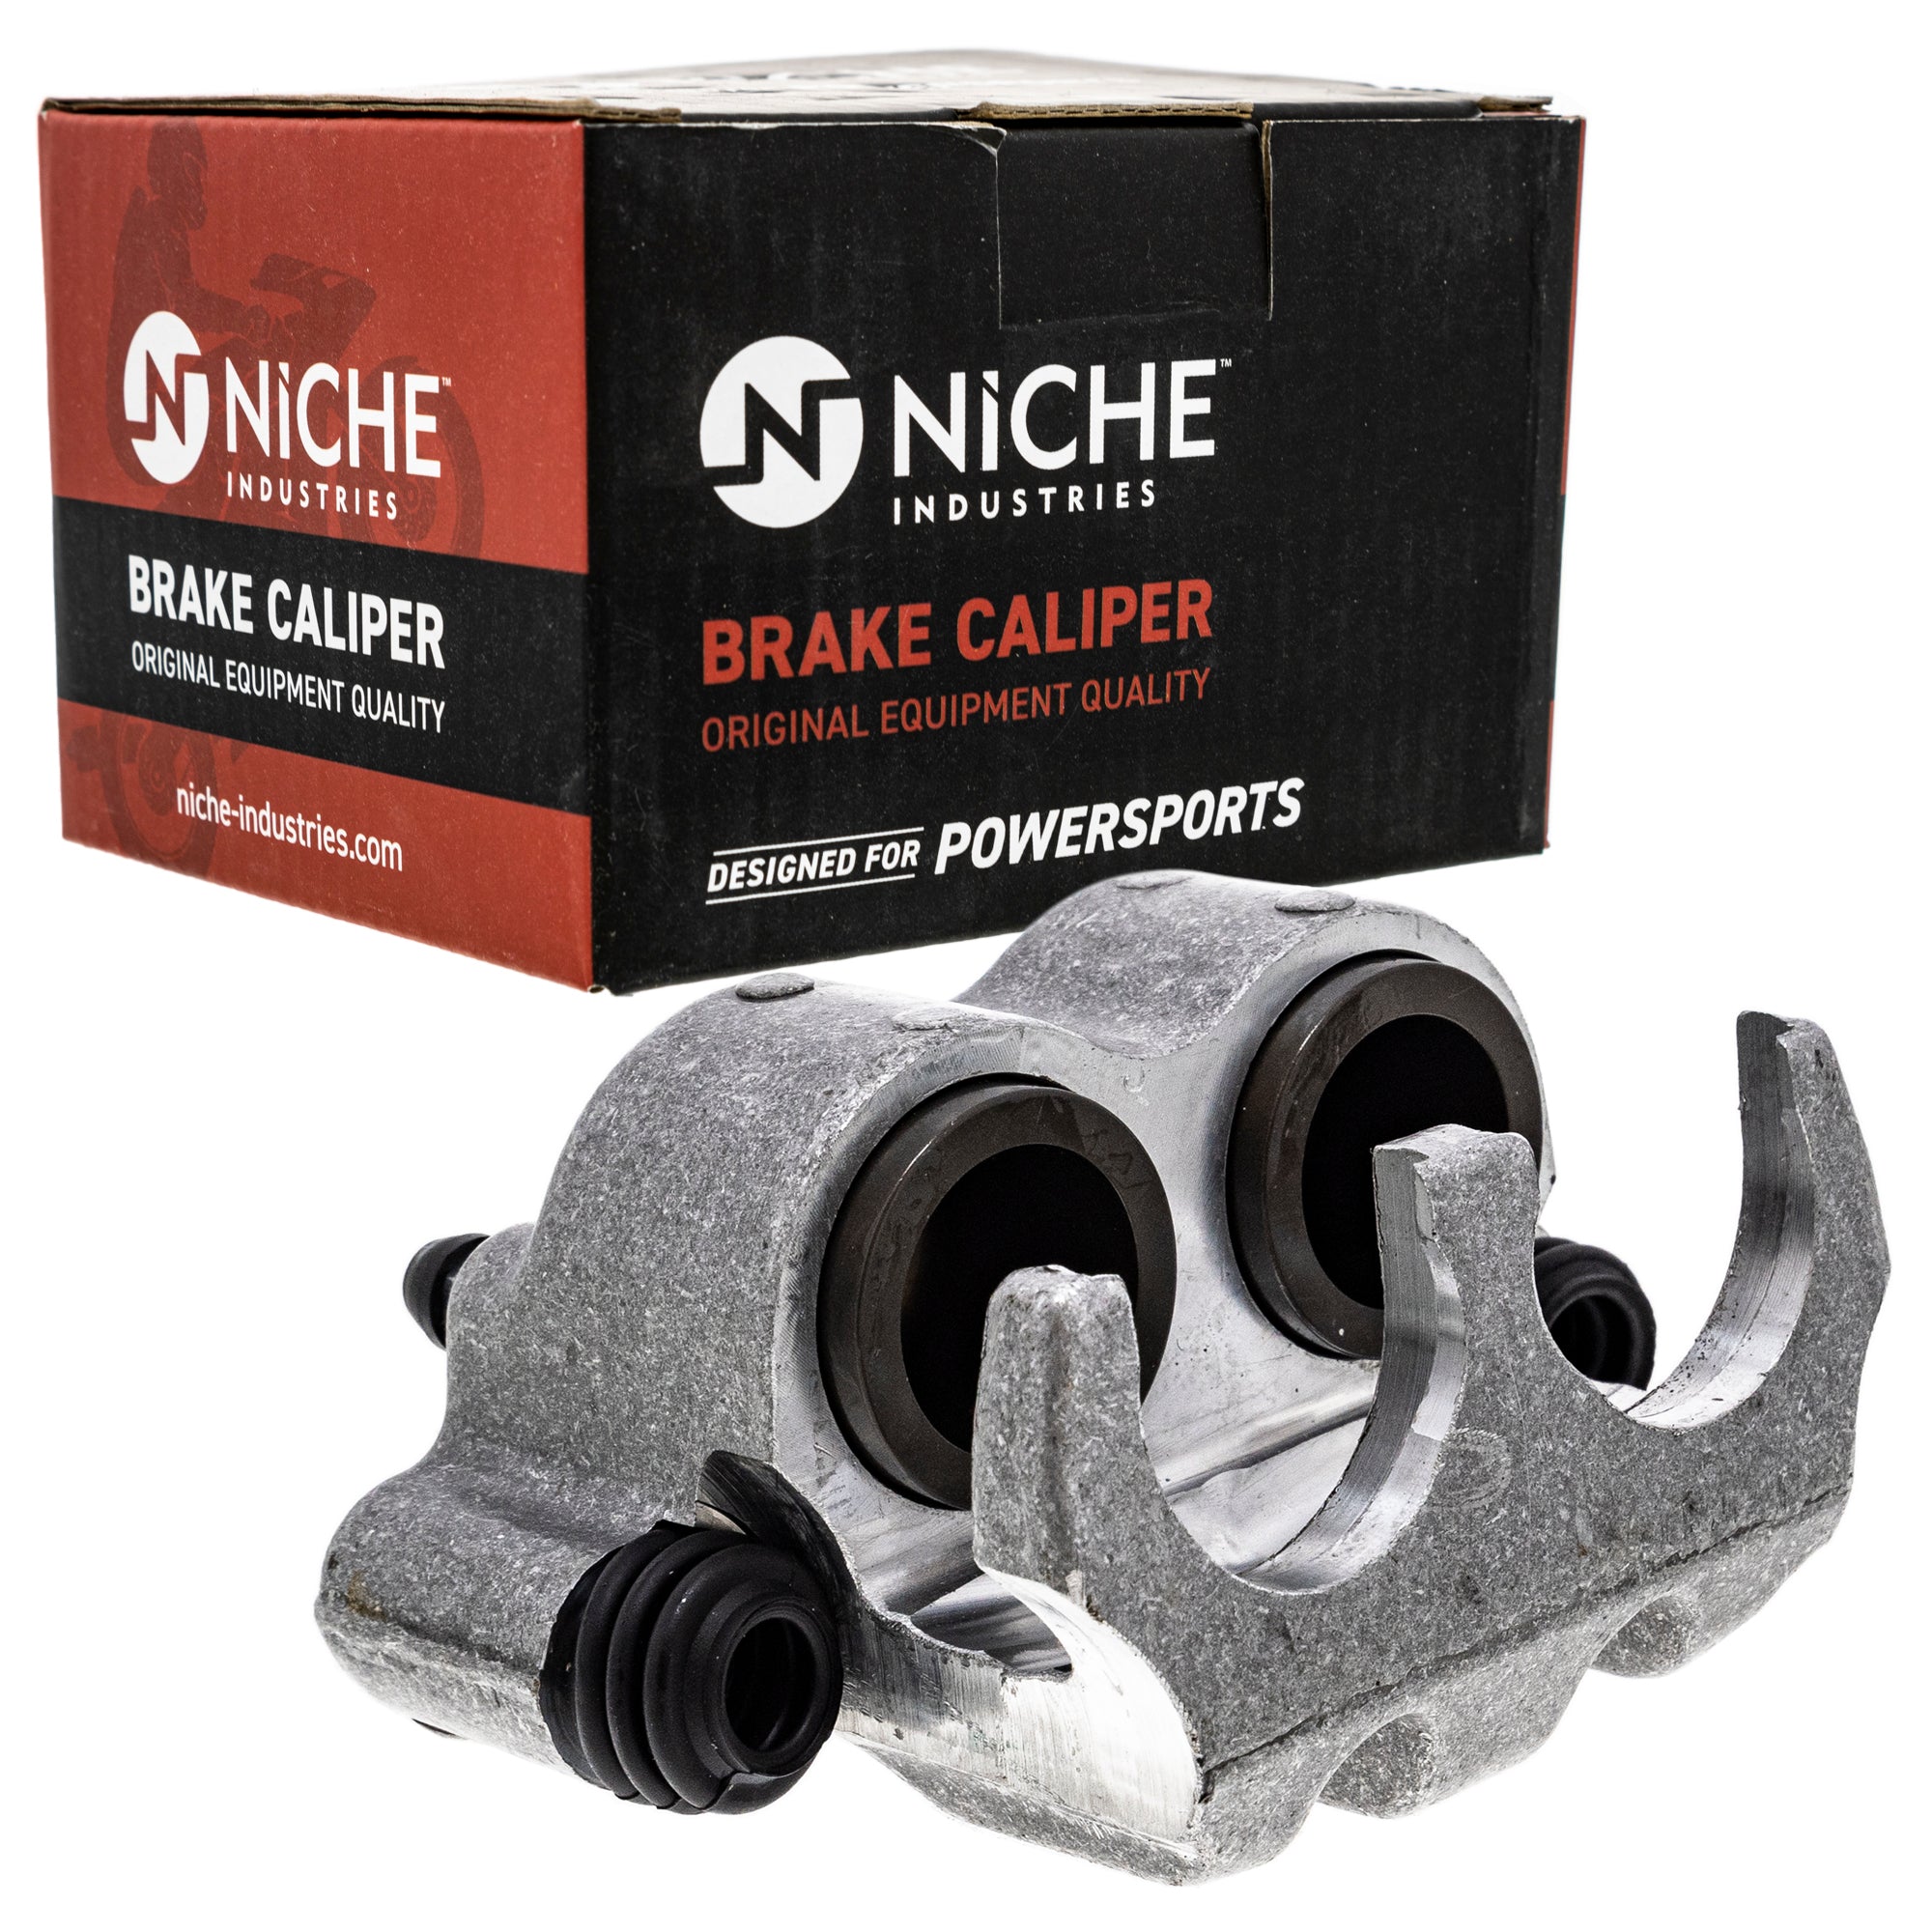 NICHE MK1001050 Brake Caliper Kit